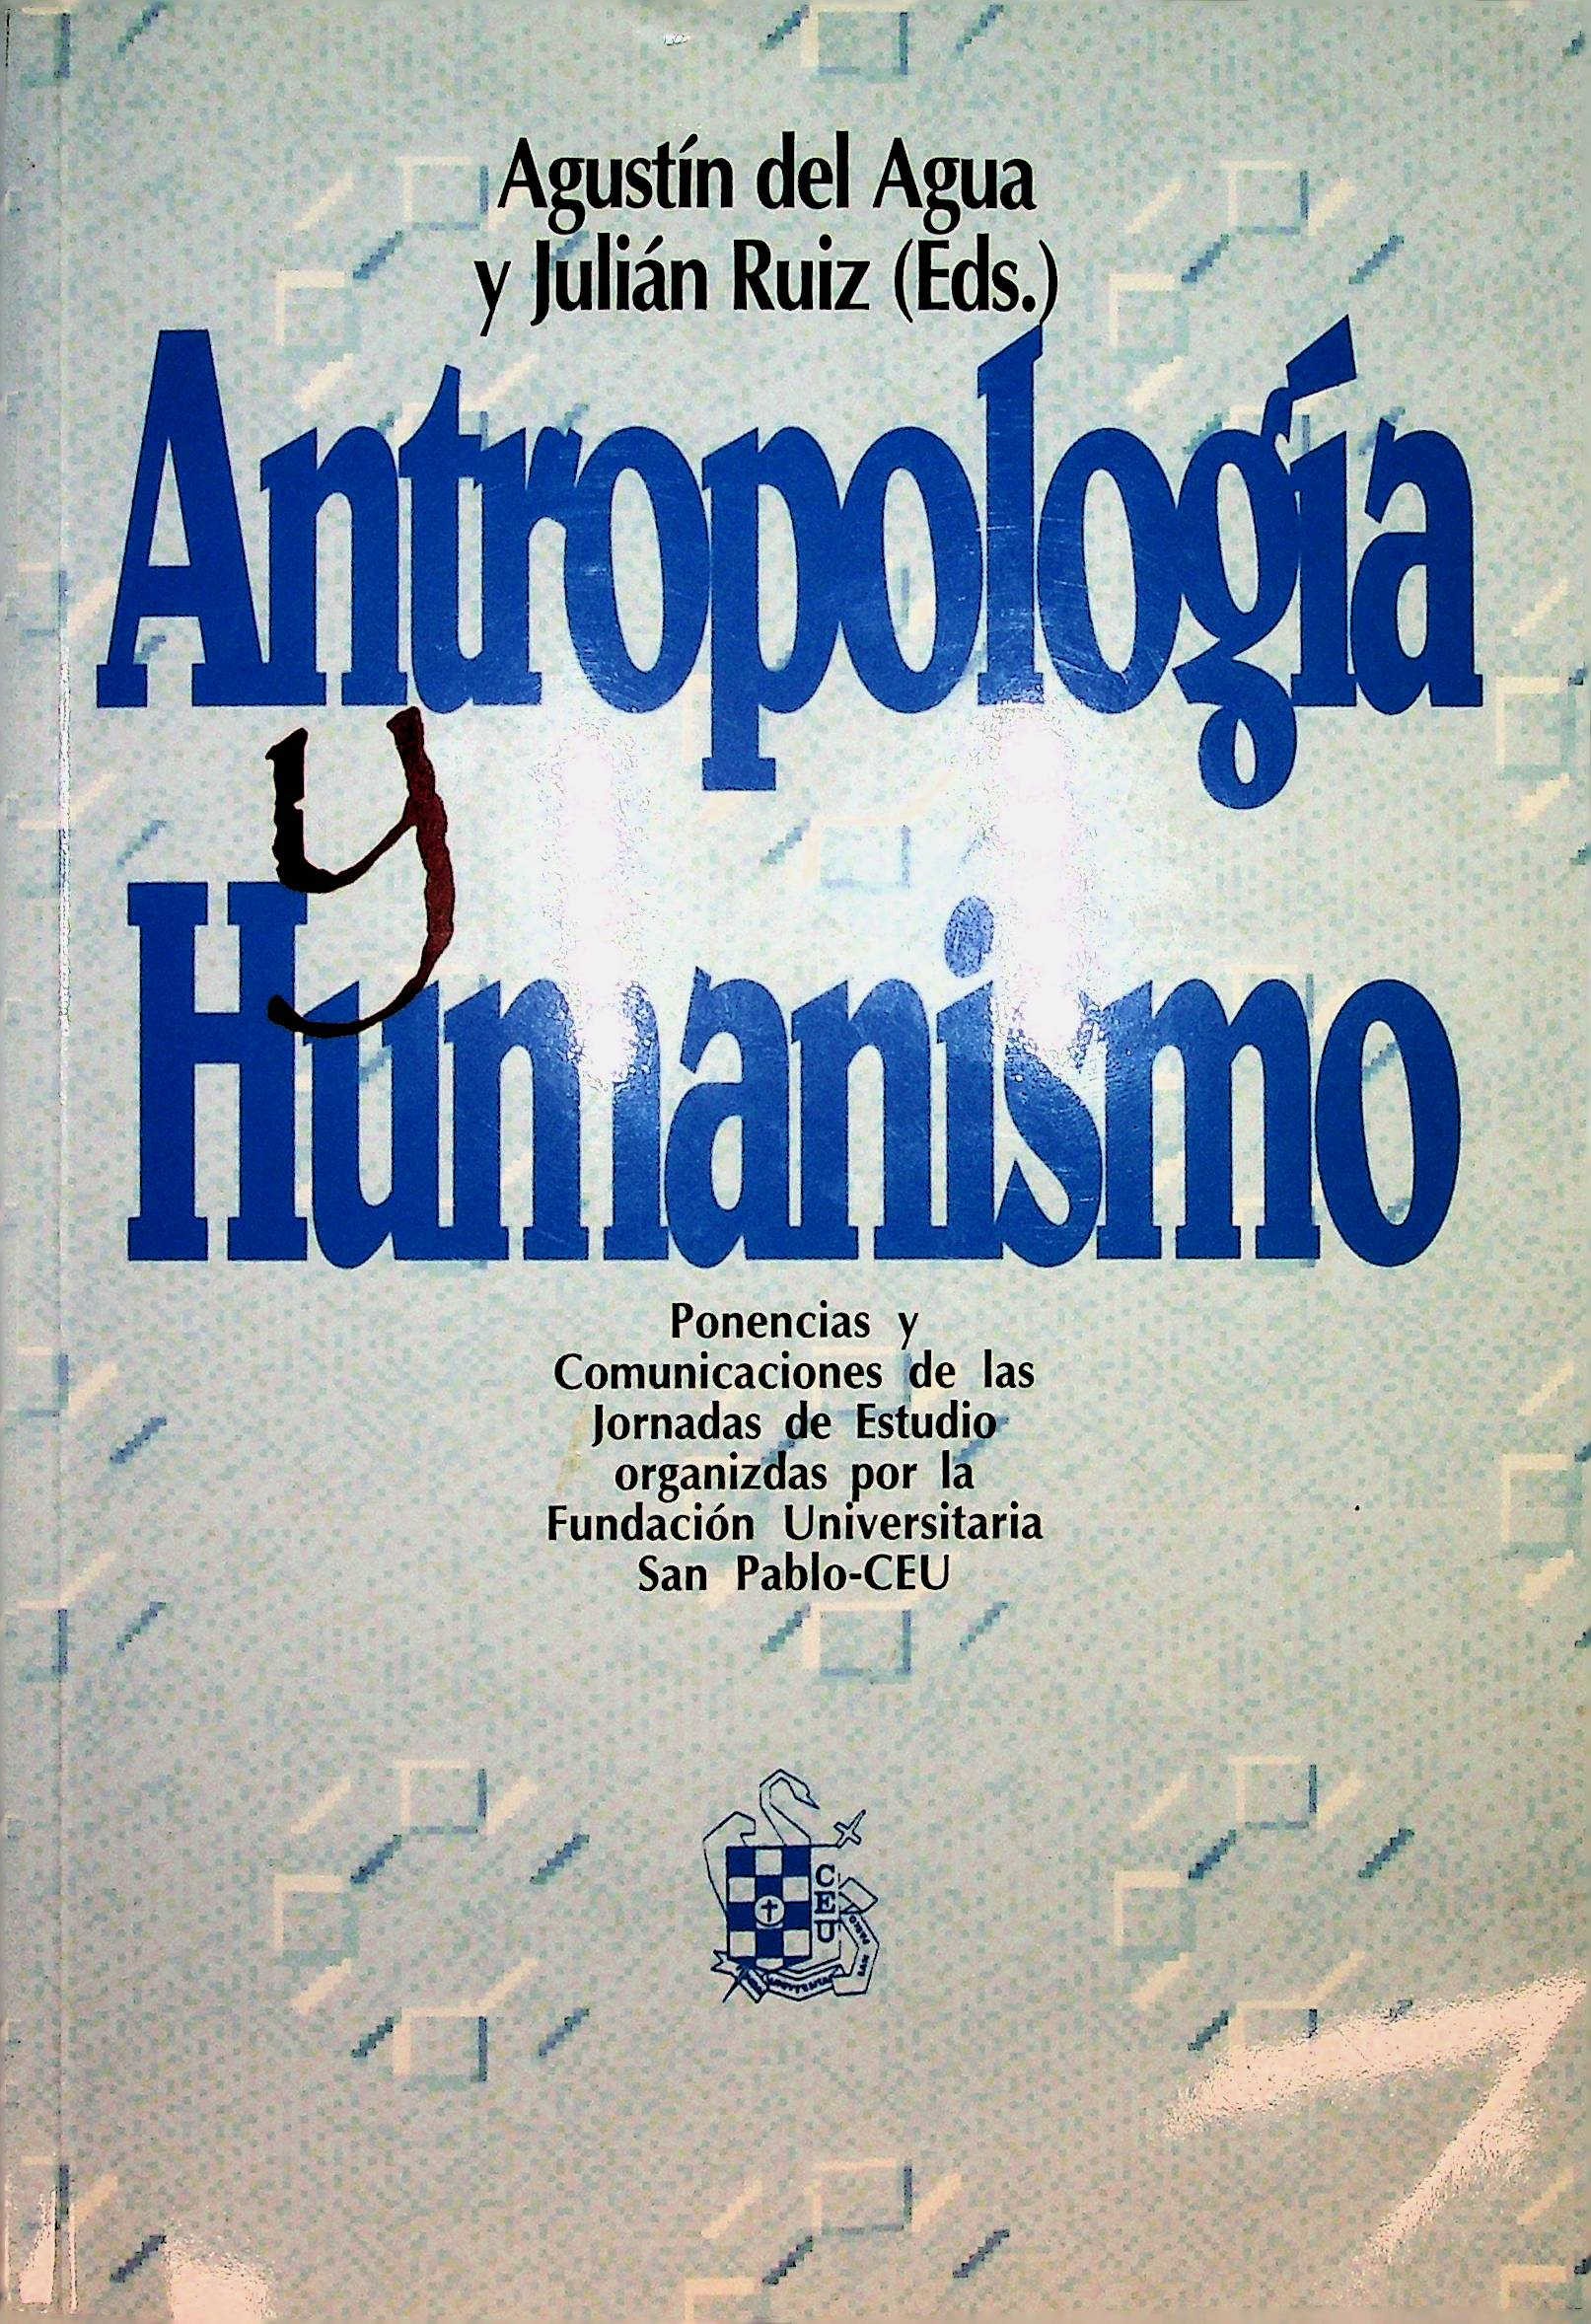 Imagen de portada del libro Antropología y humanismo: